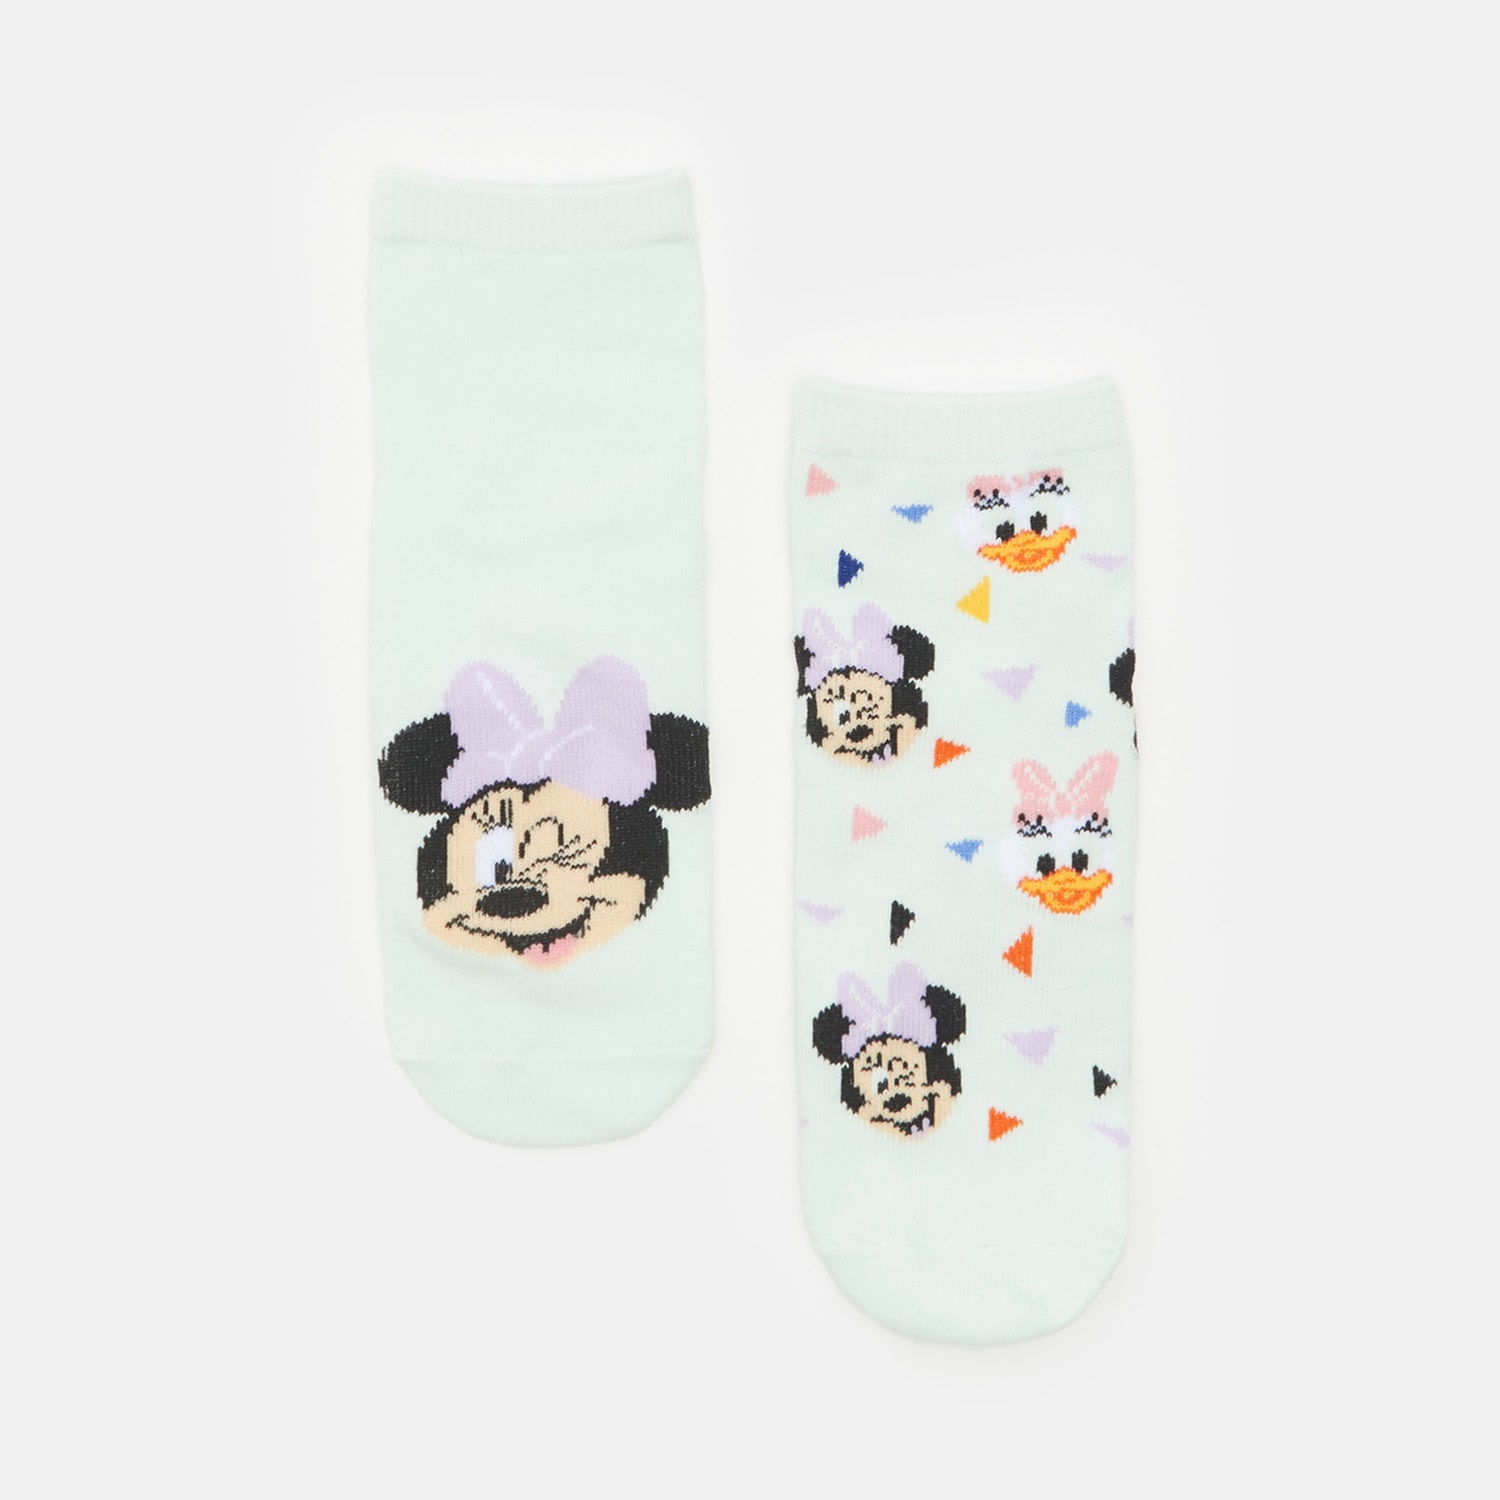 Súprava 2 párov ponožiek Disney